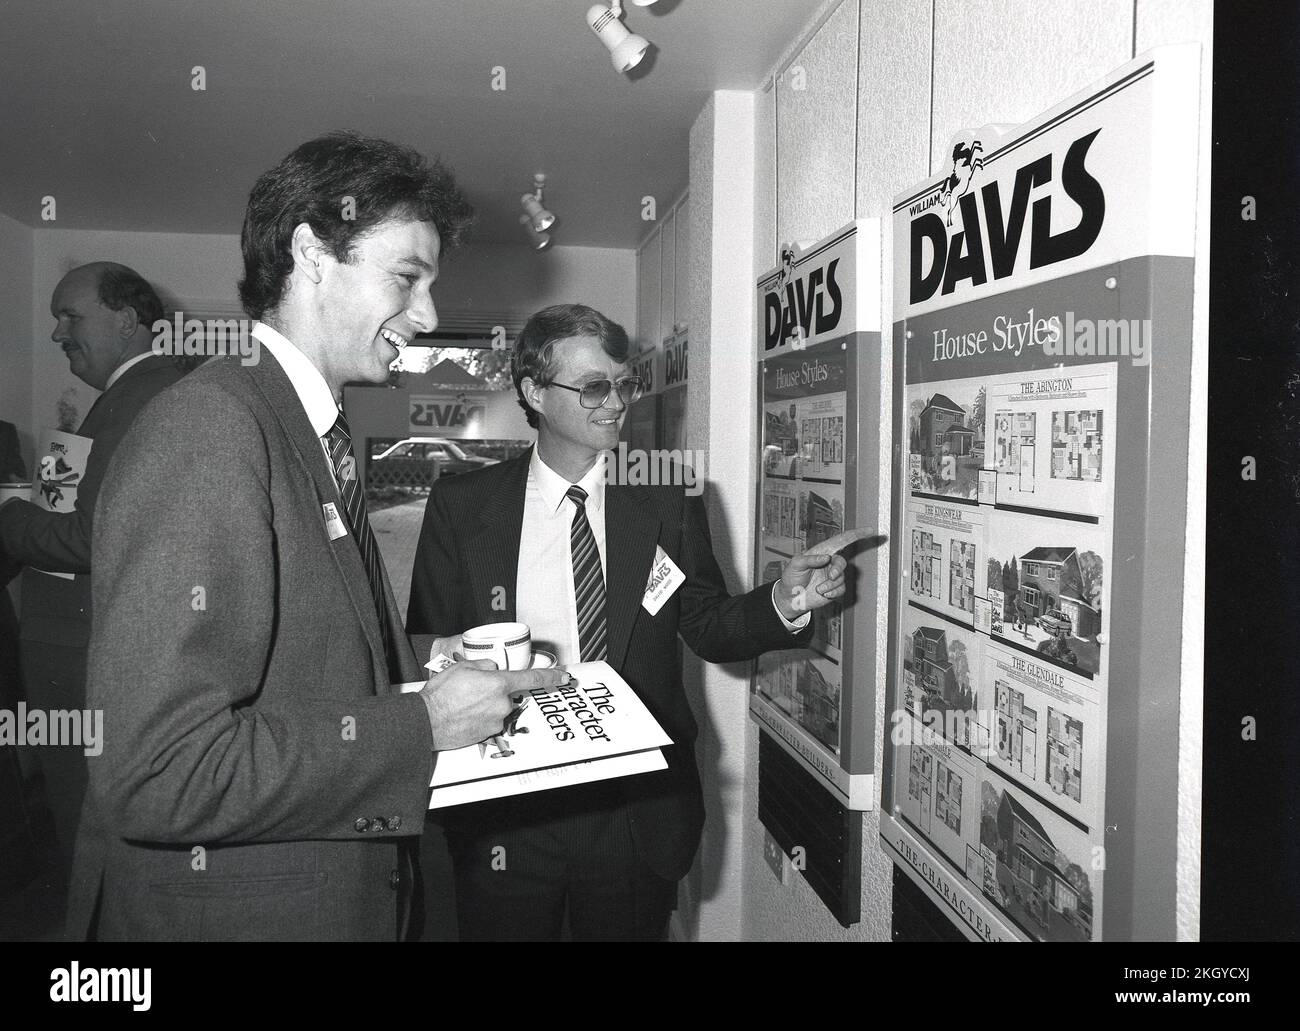 1986, storico, un giornalista in possesso di una tazza di caffè e di un opuscolo aziendale che viene mostrato da un venditore immagini dei diversi stili di casa disponibili in un nuovo sviluppo di alloggi, Sheppshed, Leicestershire, Inghilterra, Regno Unito. Foto Stock